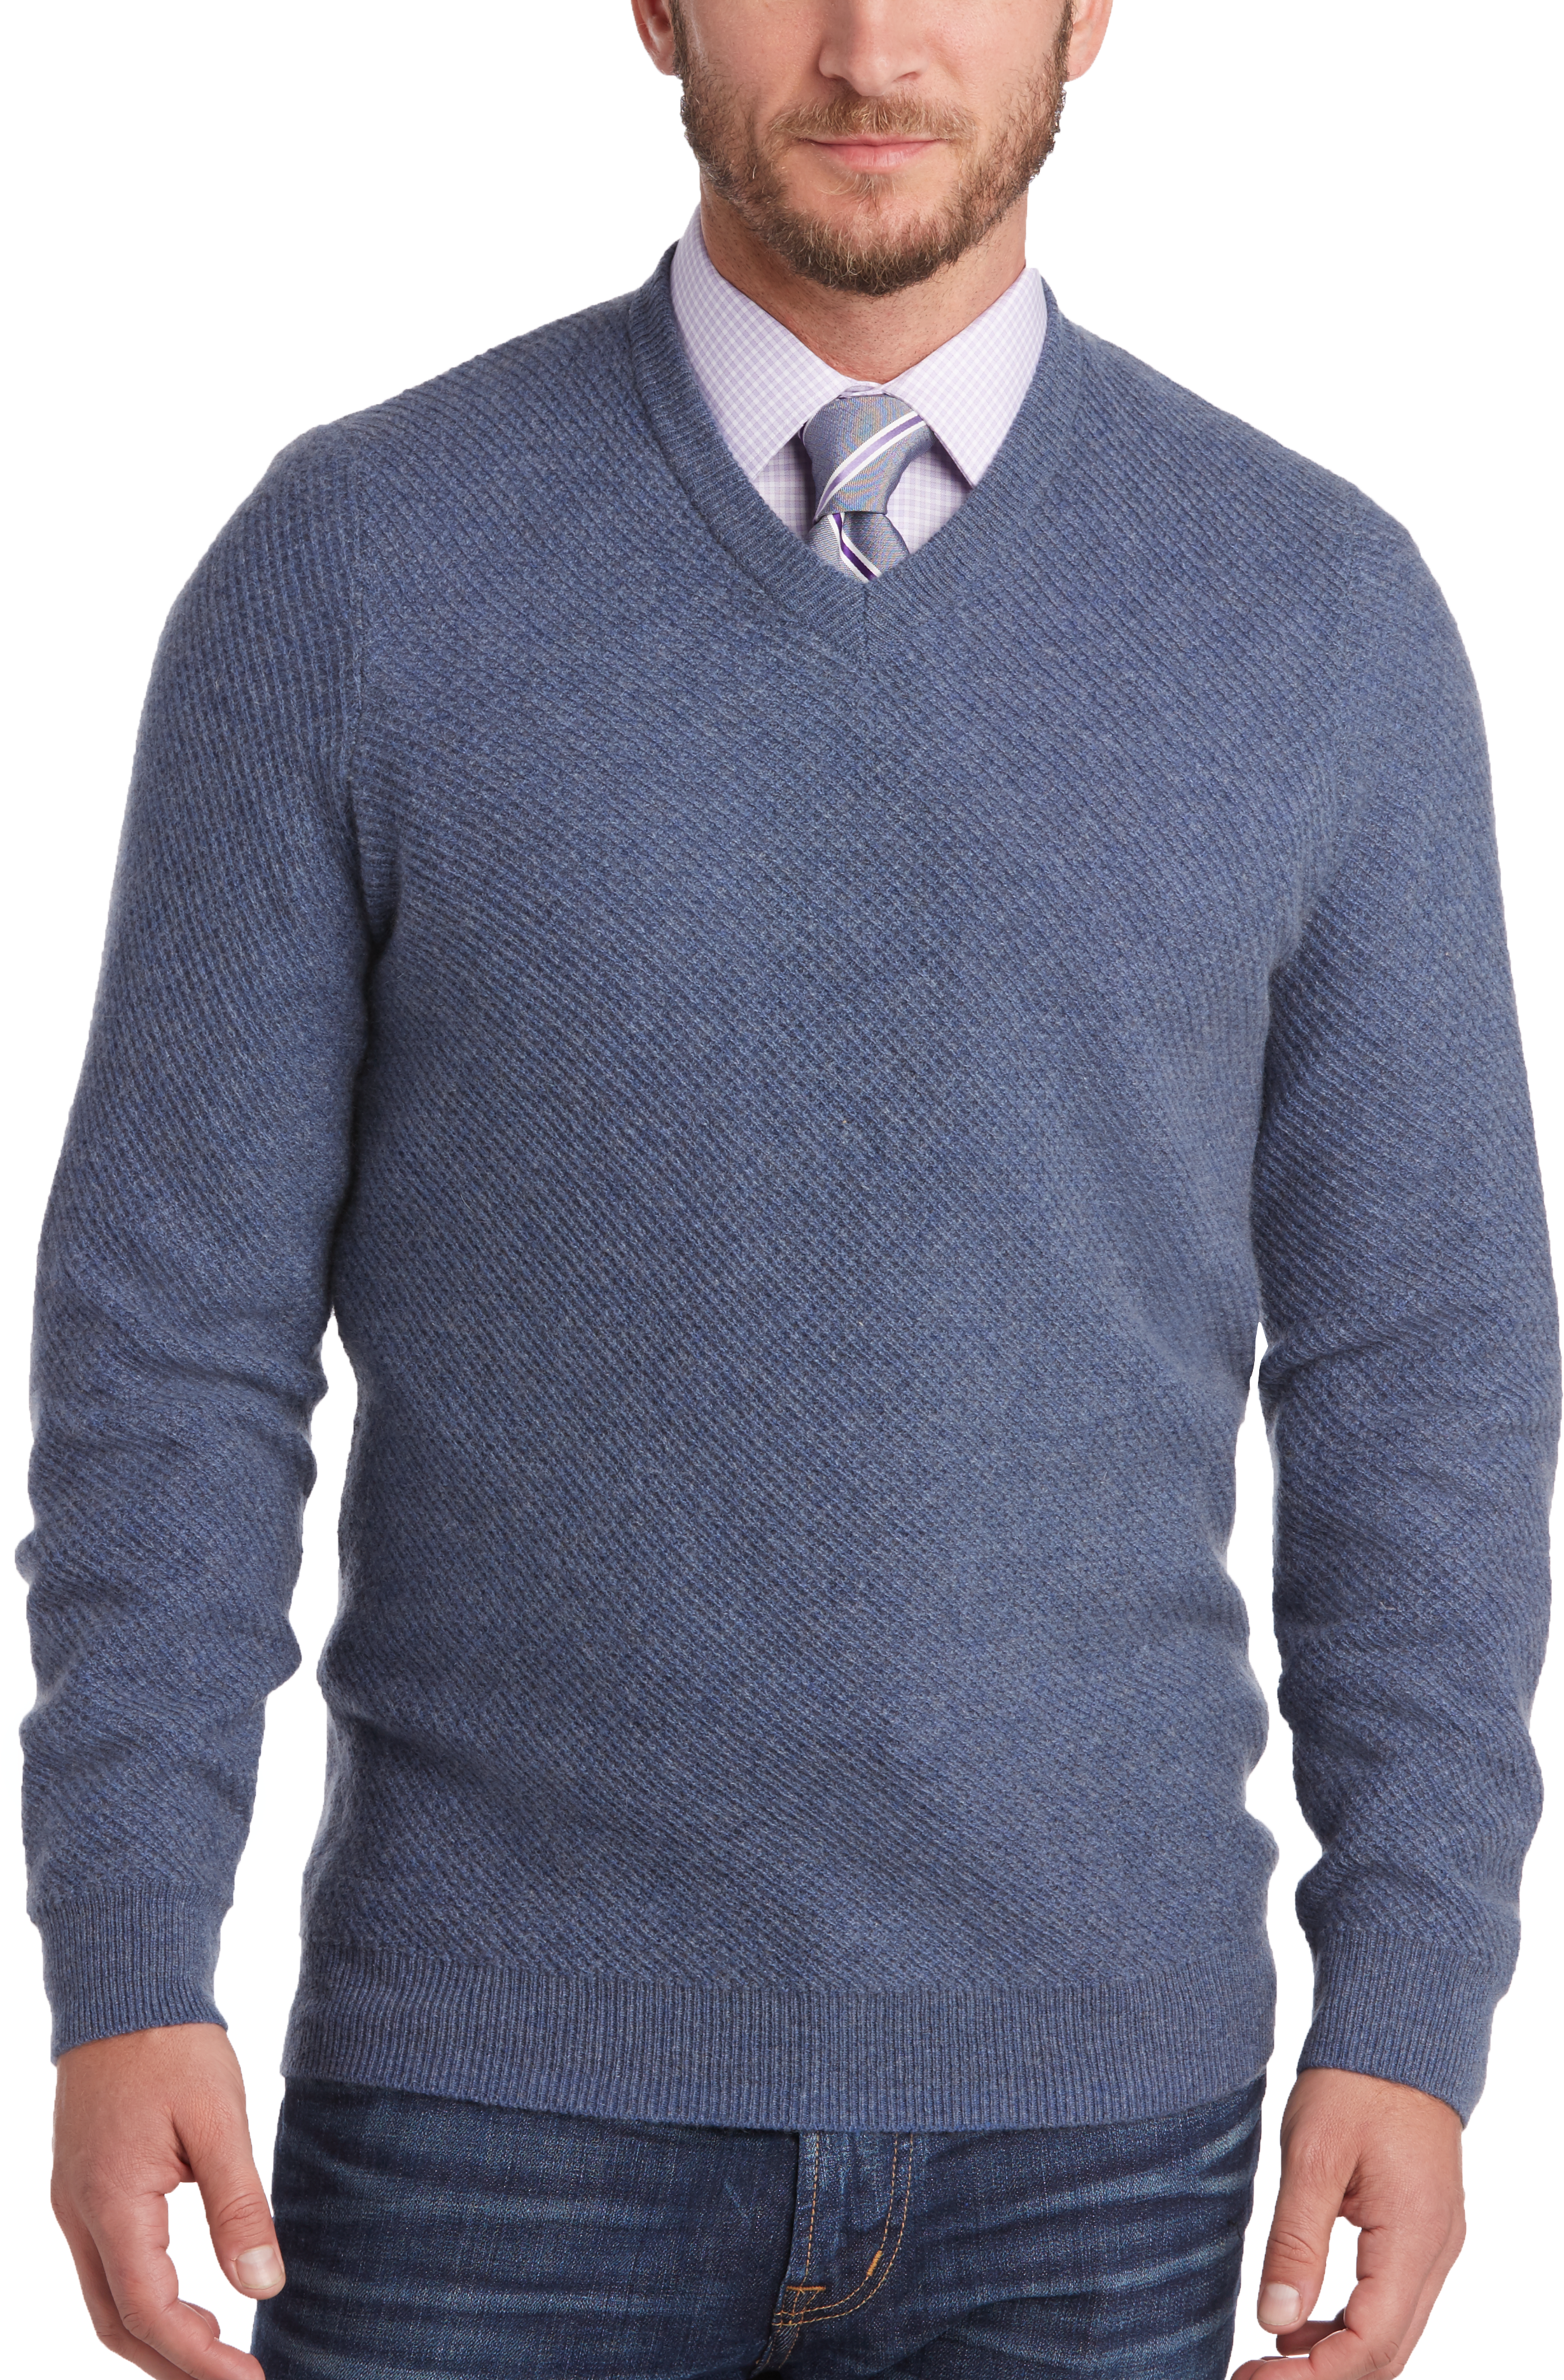 Joseph Abboud Blue Cashmere Modern Fit Sweater - Men's Sale | Men's ...